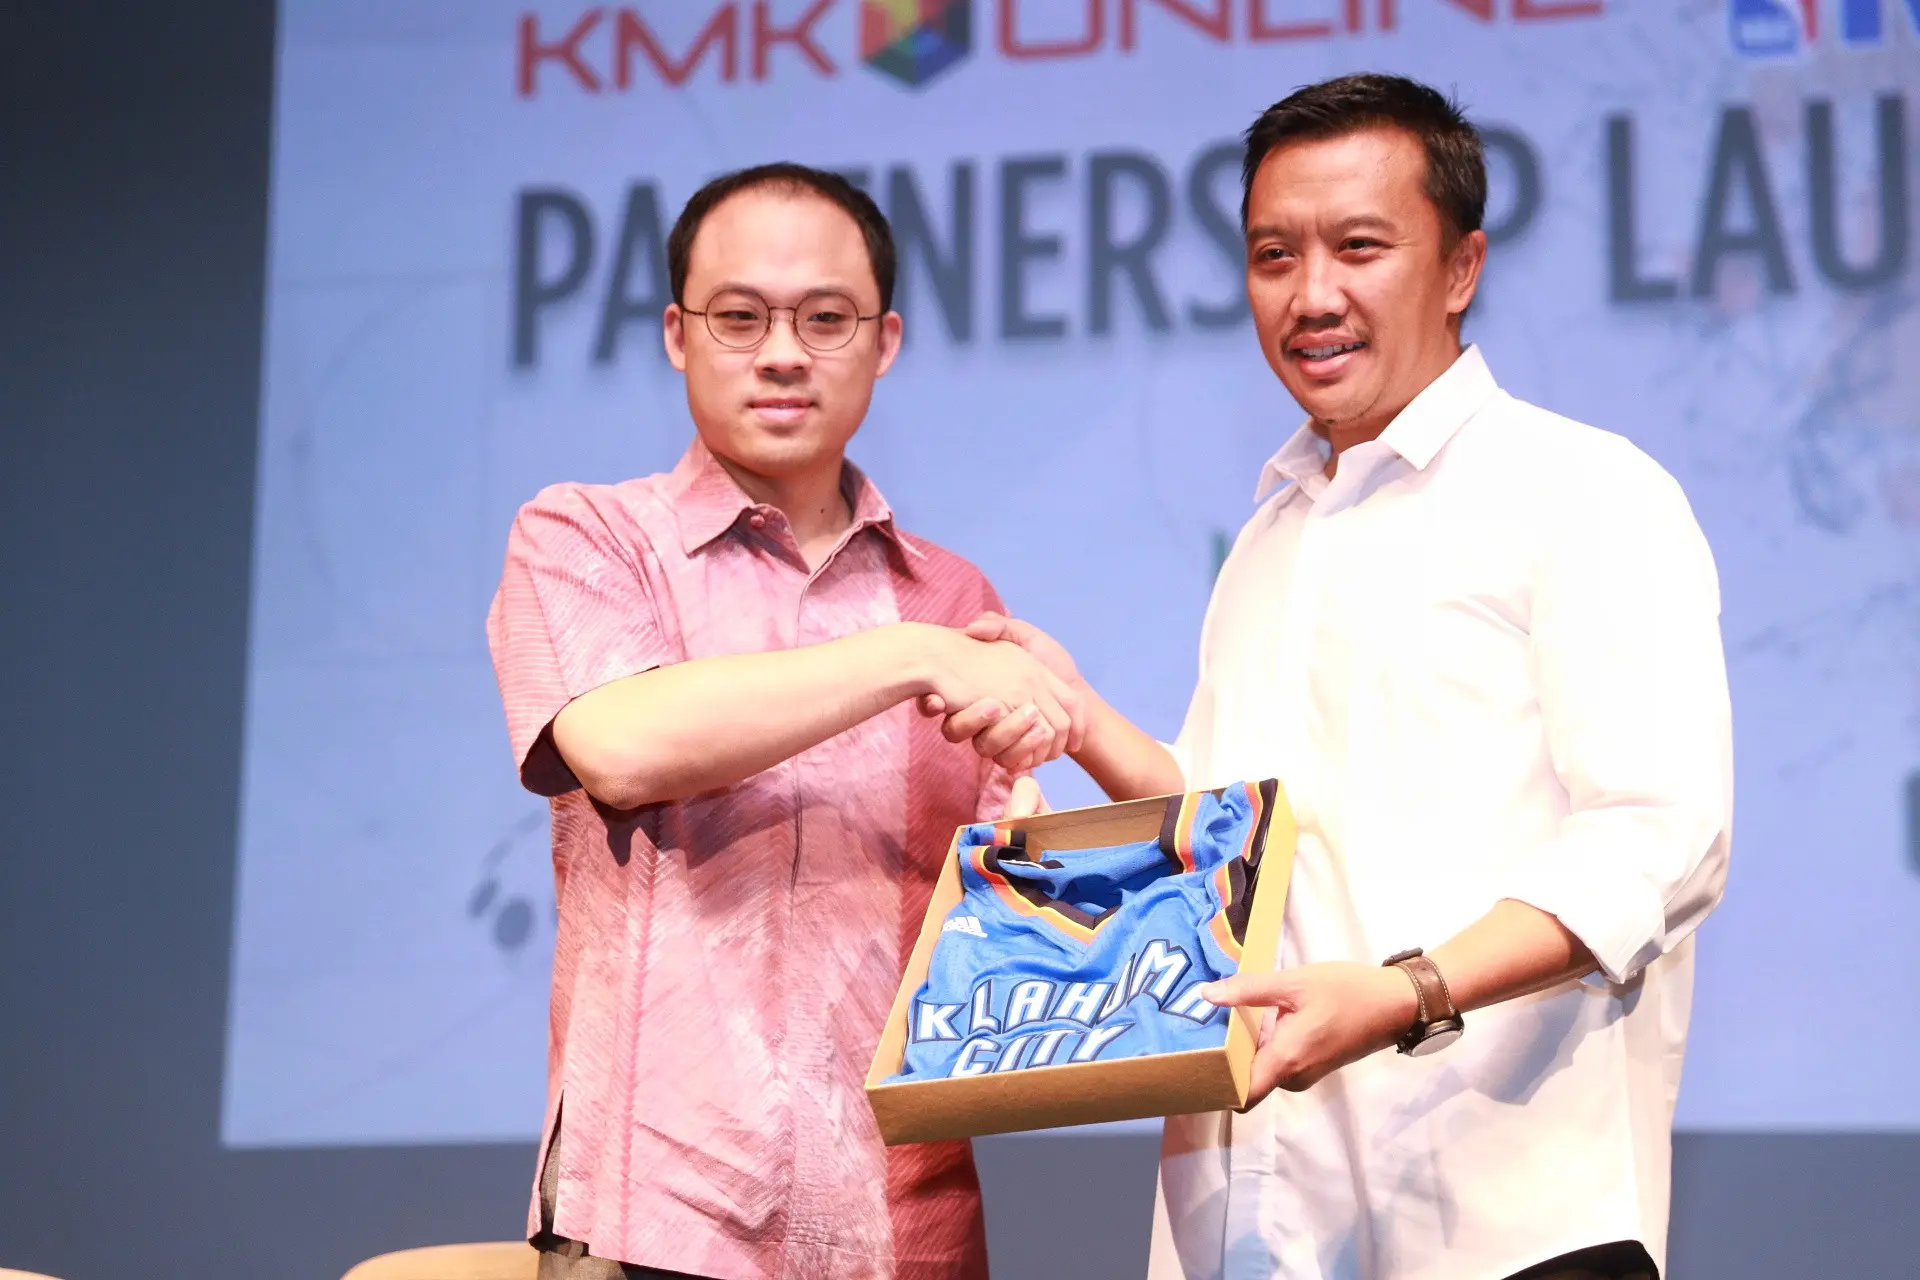 CEO KMK Online Adi Sariaatmadja dan Menporan Imam Nahrawi saat launching Partnership NBA. (Adrian Putra/Bintang.com)